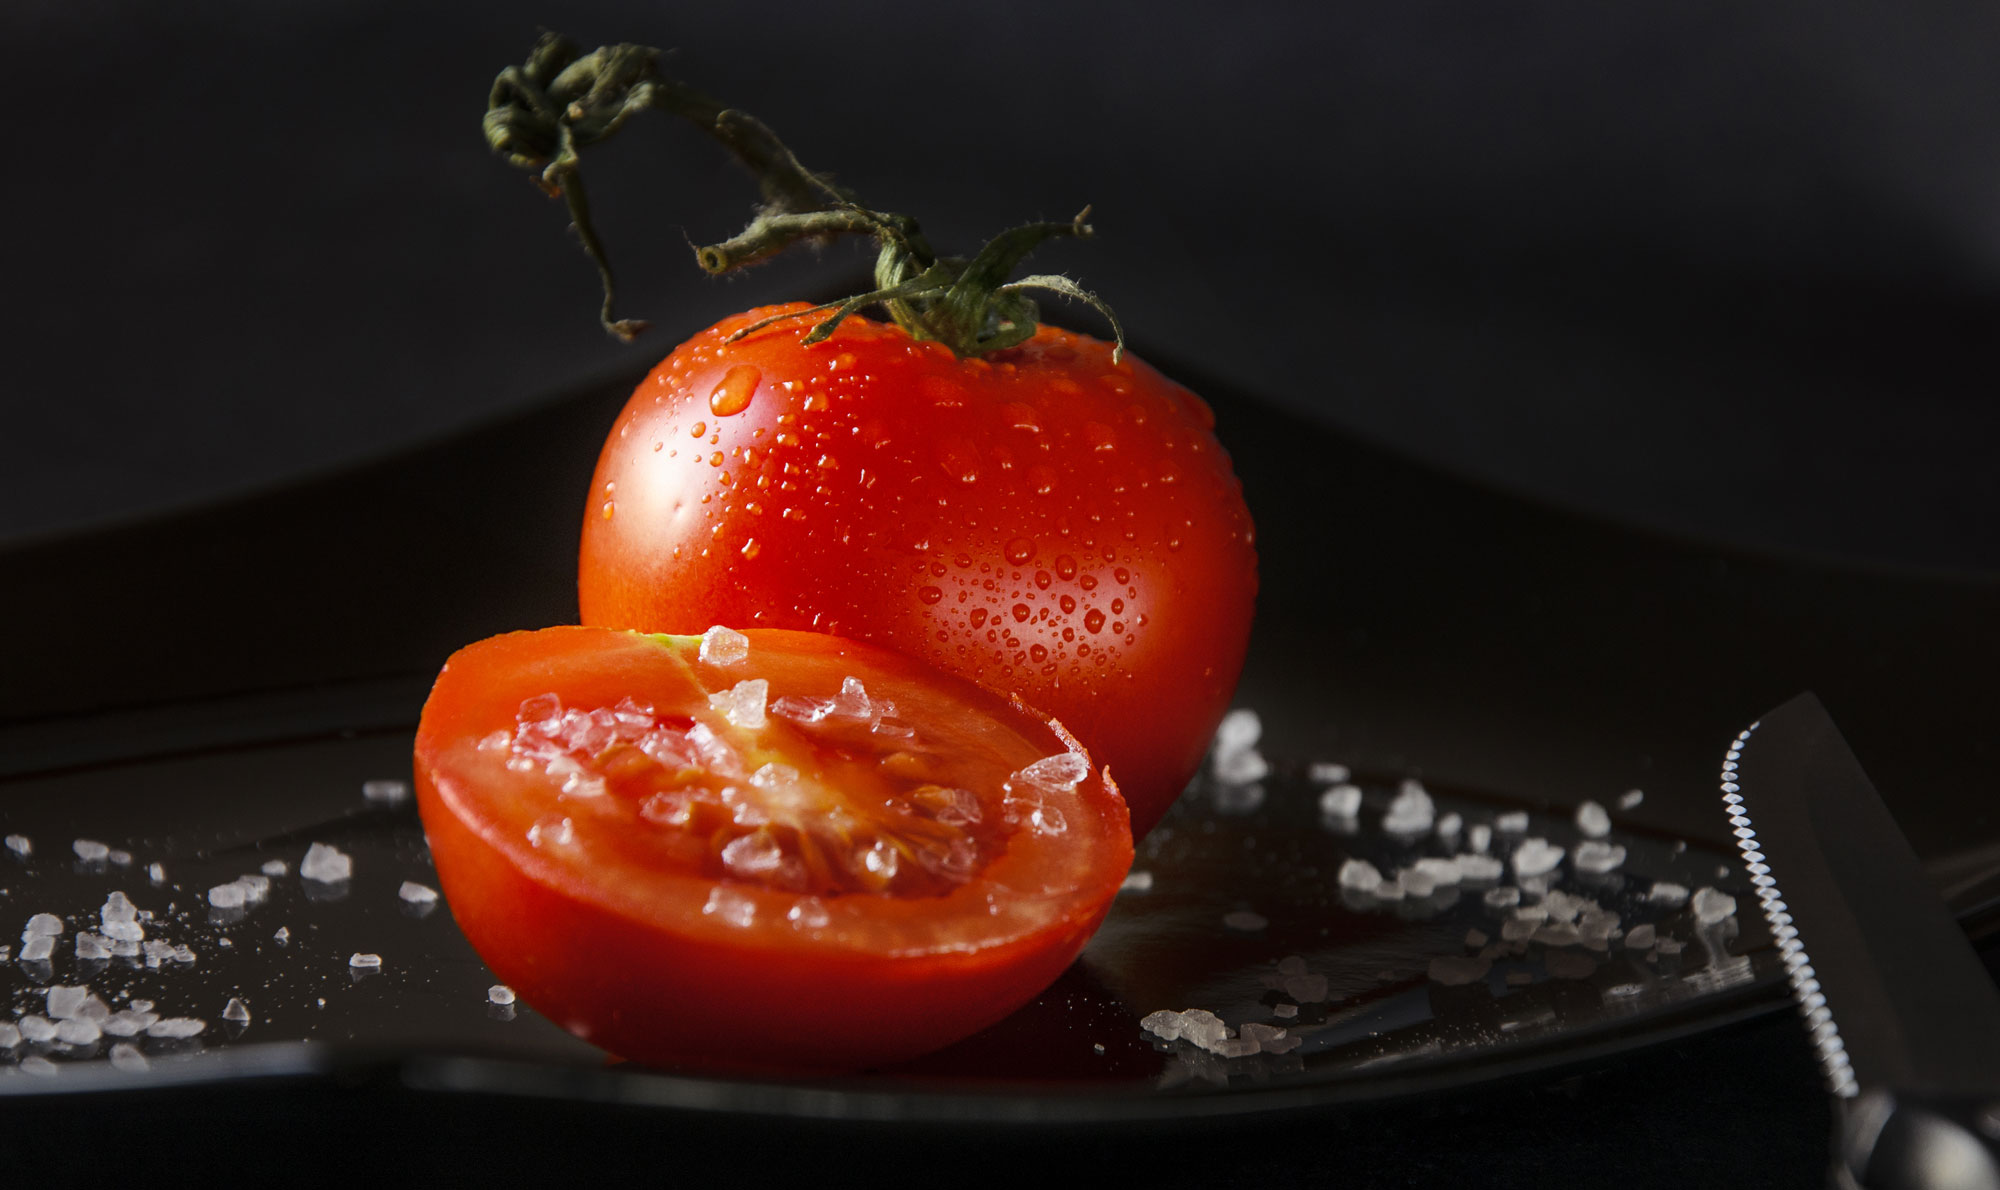 rajčice i hipertenzija